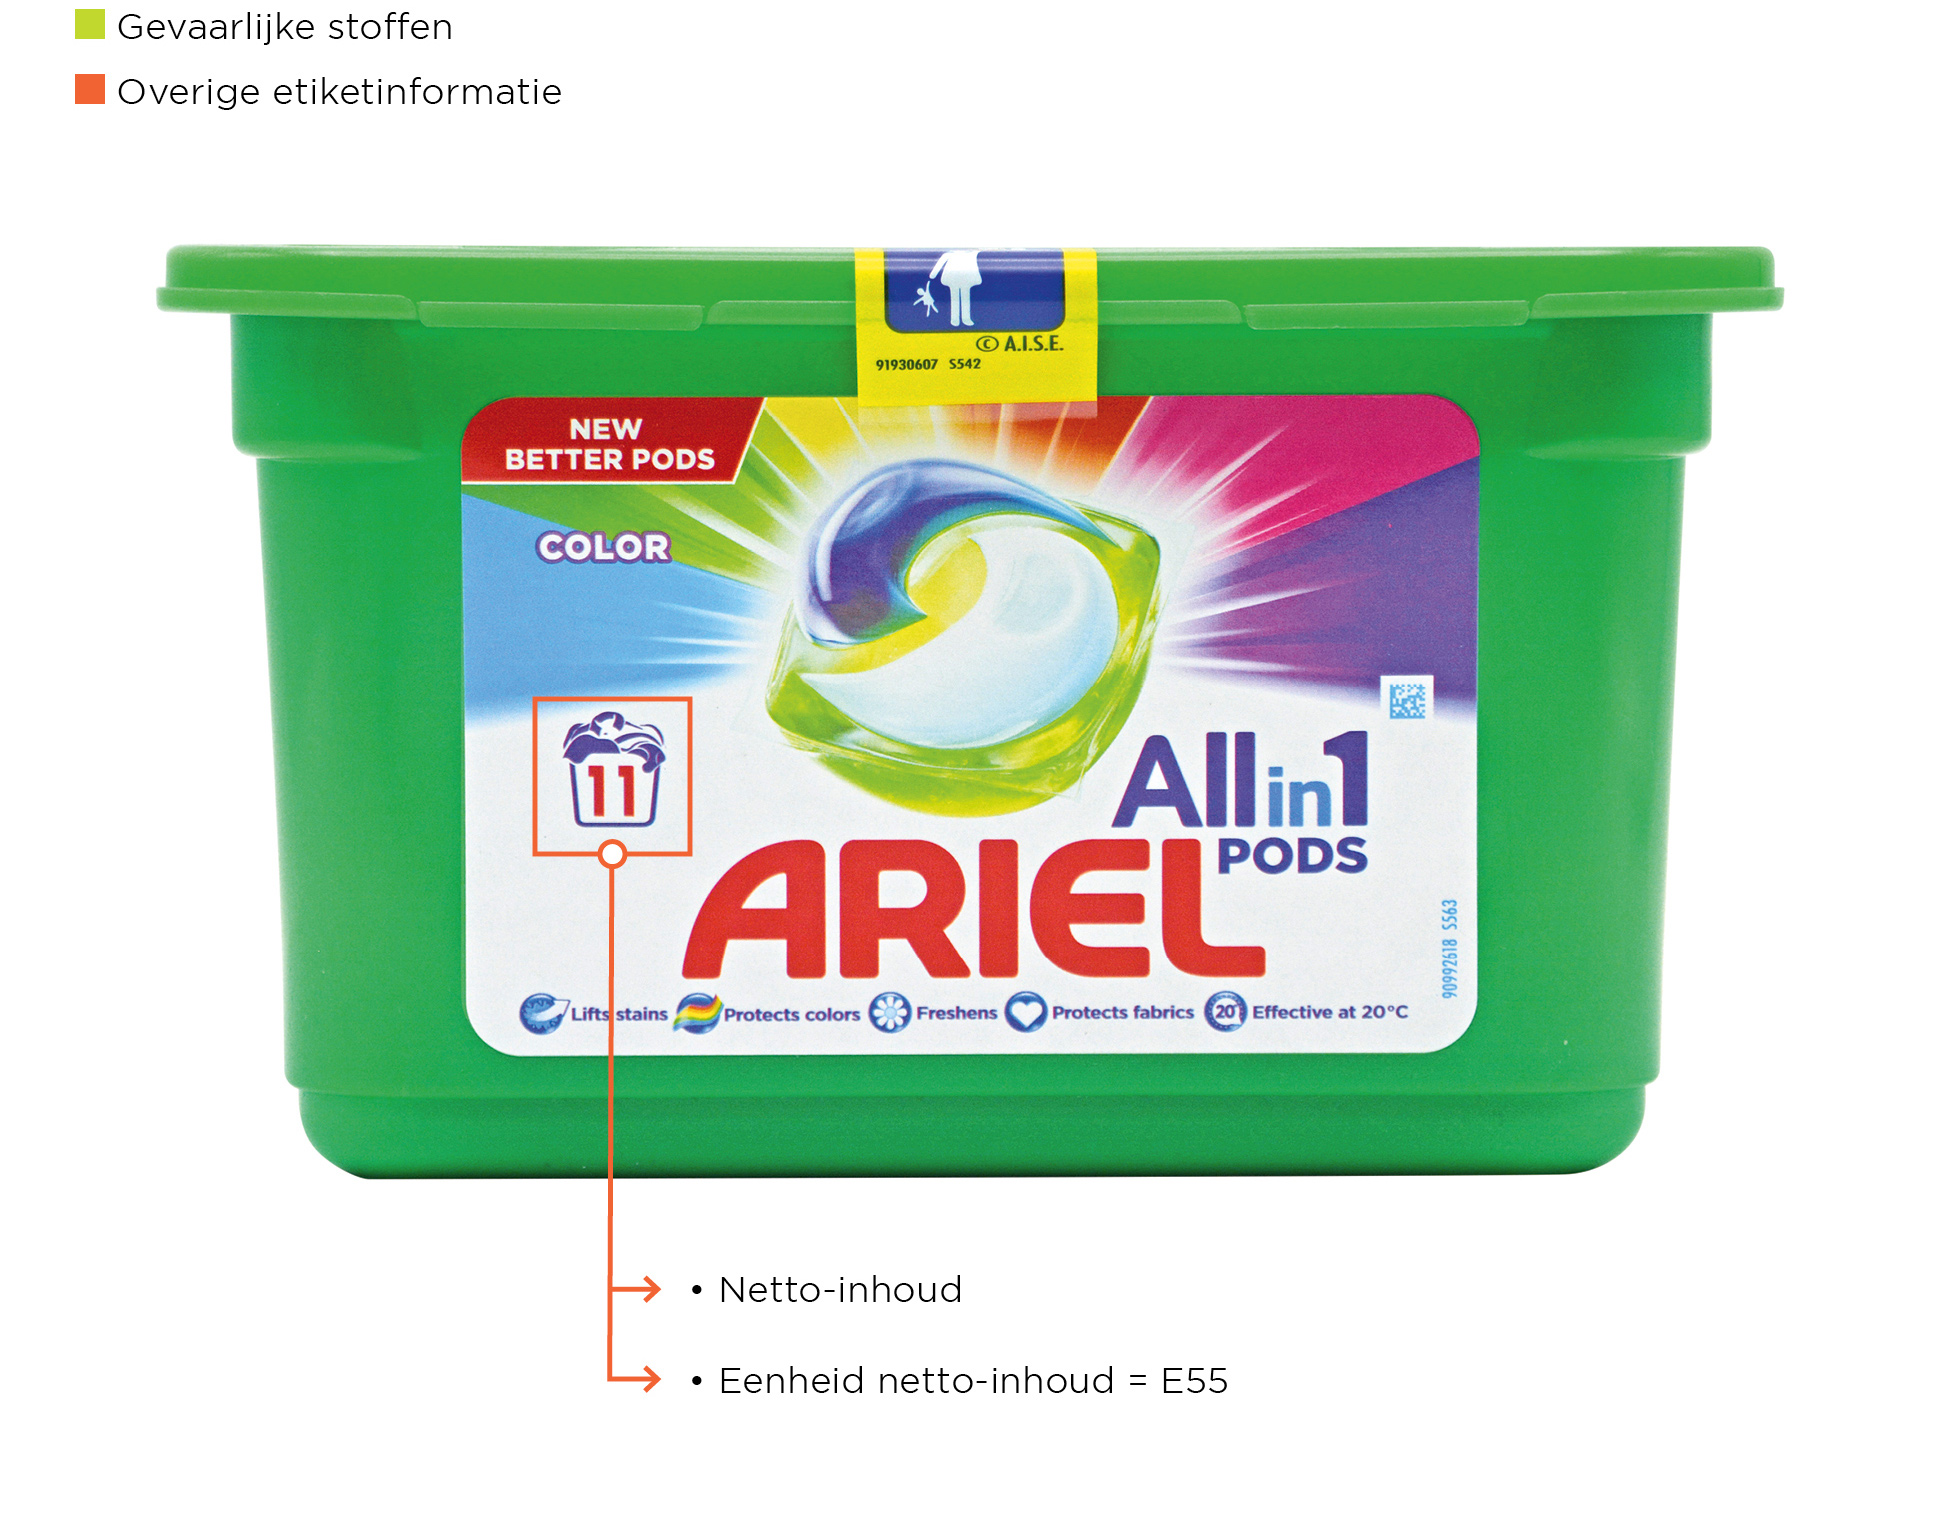 Etiketvelden Detergenten ARIEL ZONDER NUMMERS